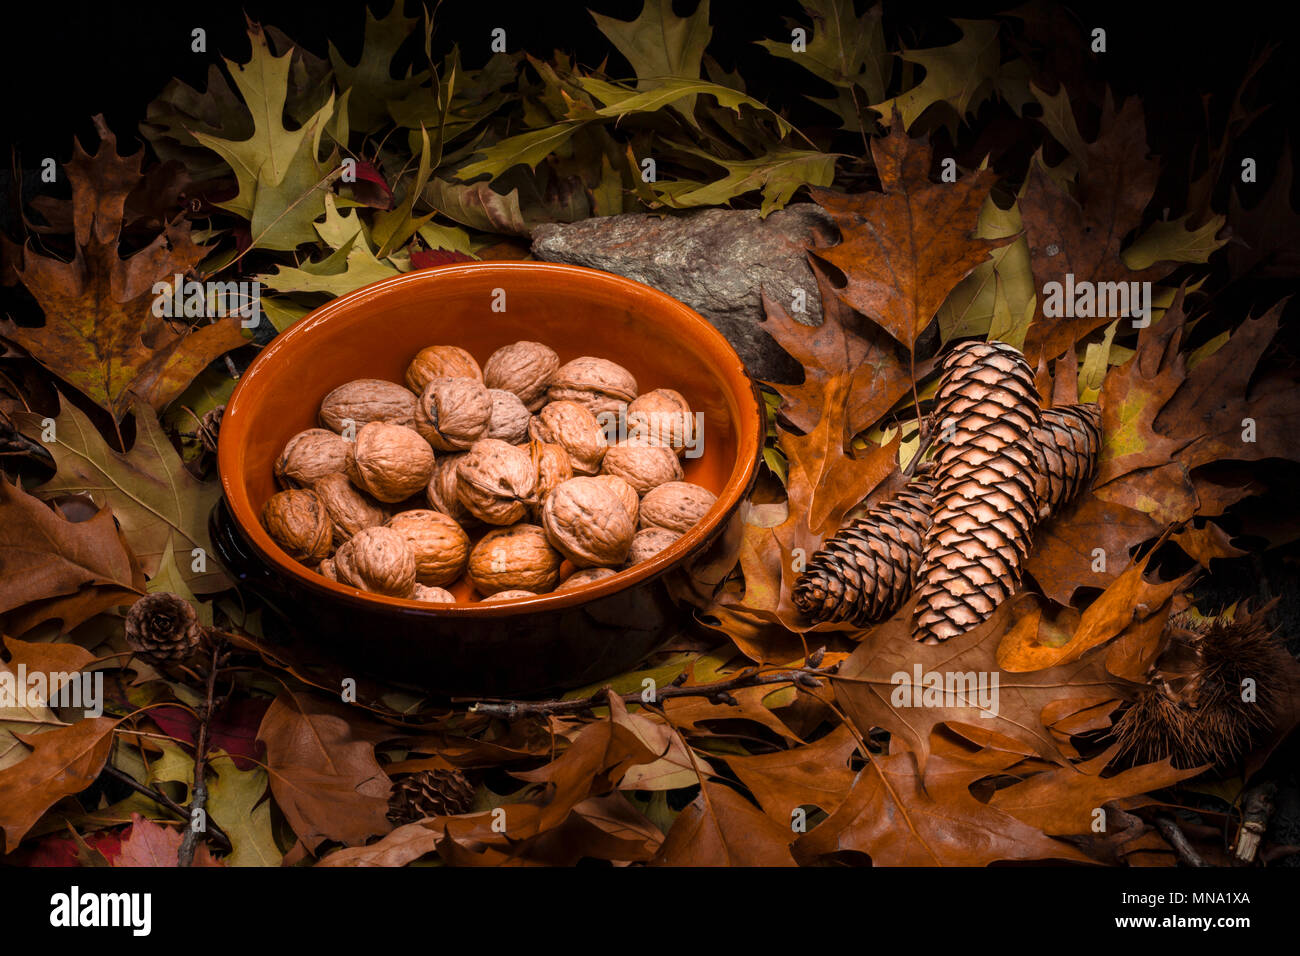 La vie encore d'automne composition avec vert, jaune, marron, orange et rouge des feuilles, branches, pommes de pin, un pot de terre cuite rustique avec des noix, les brins et un sto Banque D'Images